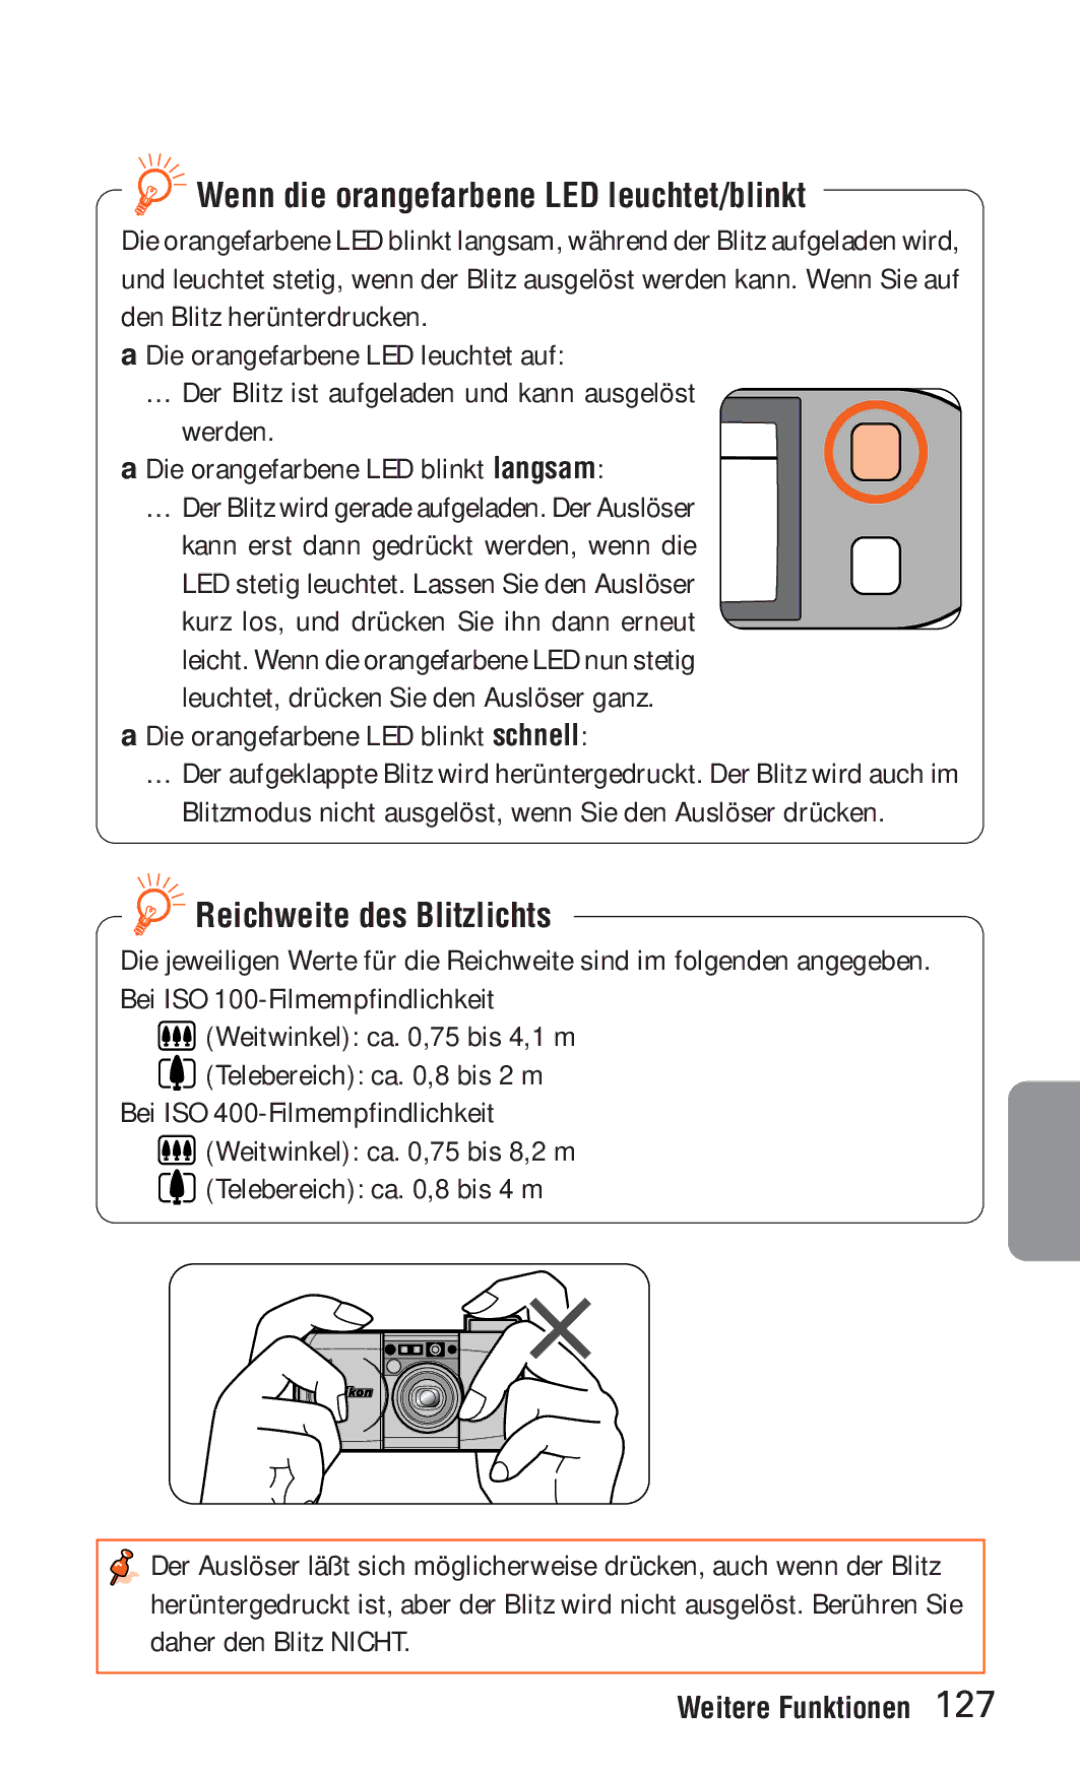 Nikon ED 120 instruction manual Wenn die orangefarbene LED leuchtet/blinkt, Reichweite des Blitzlichts 